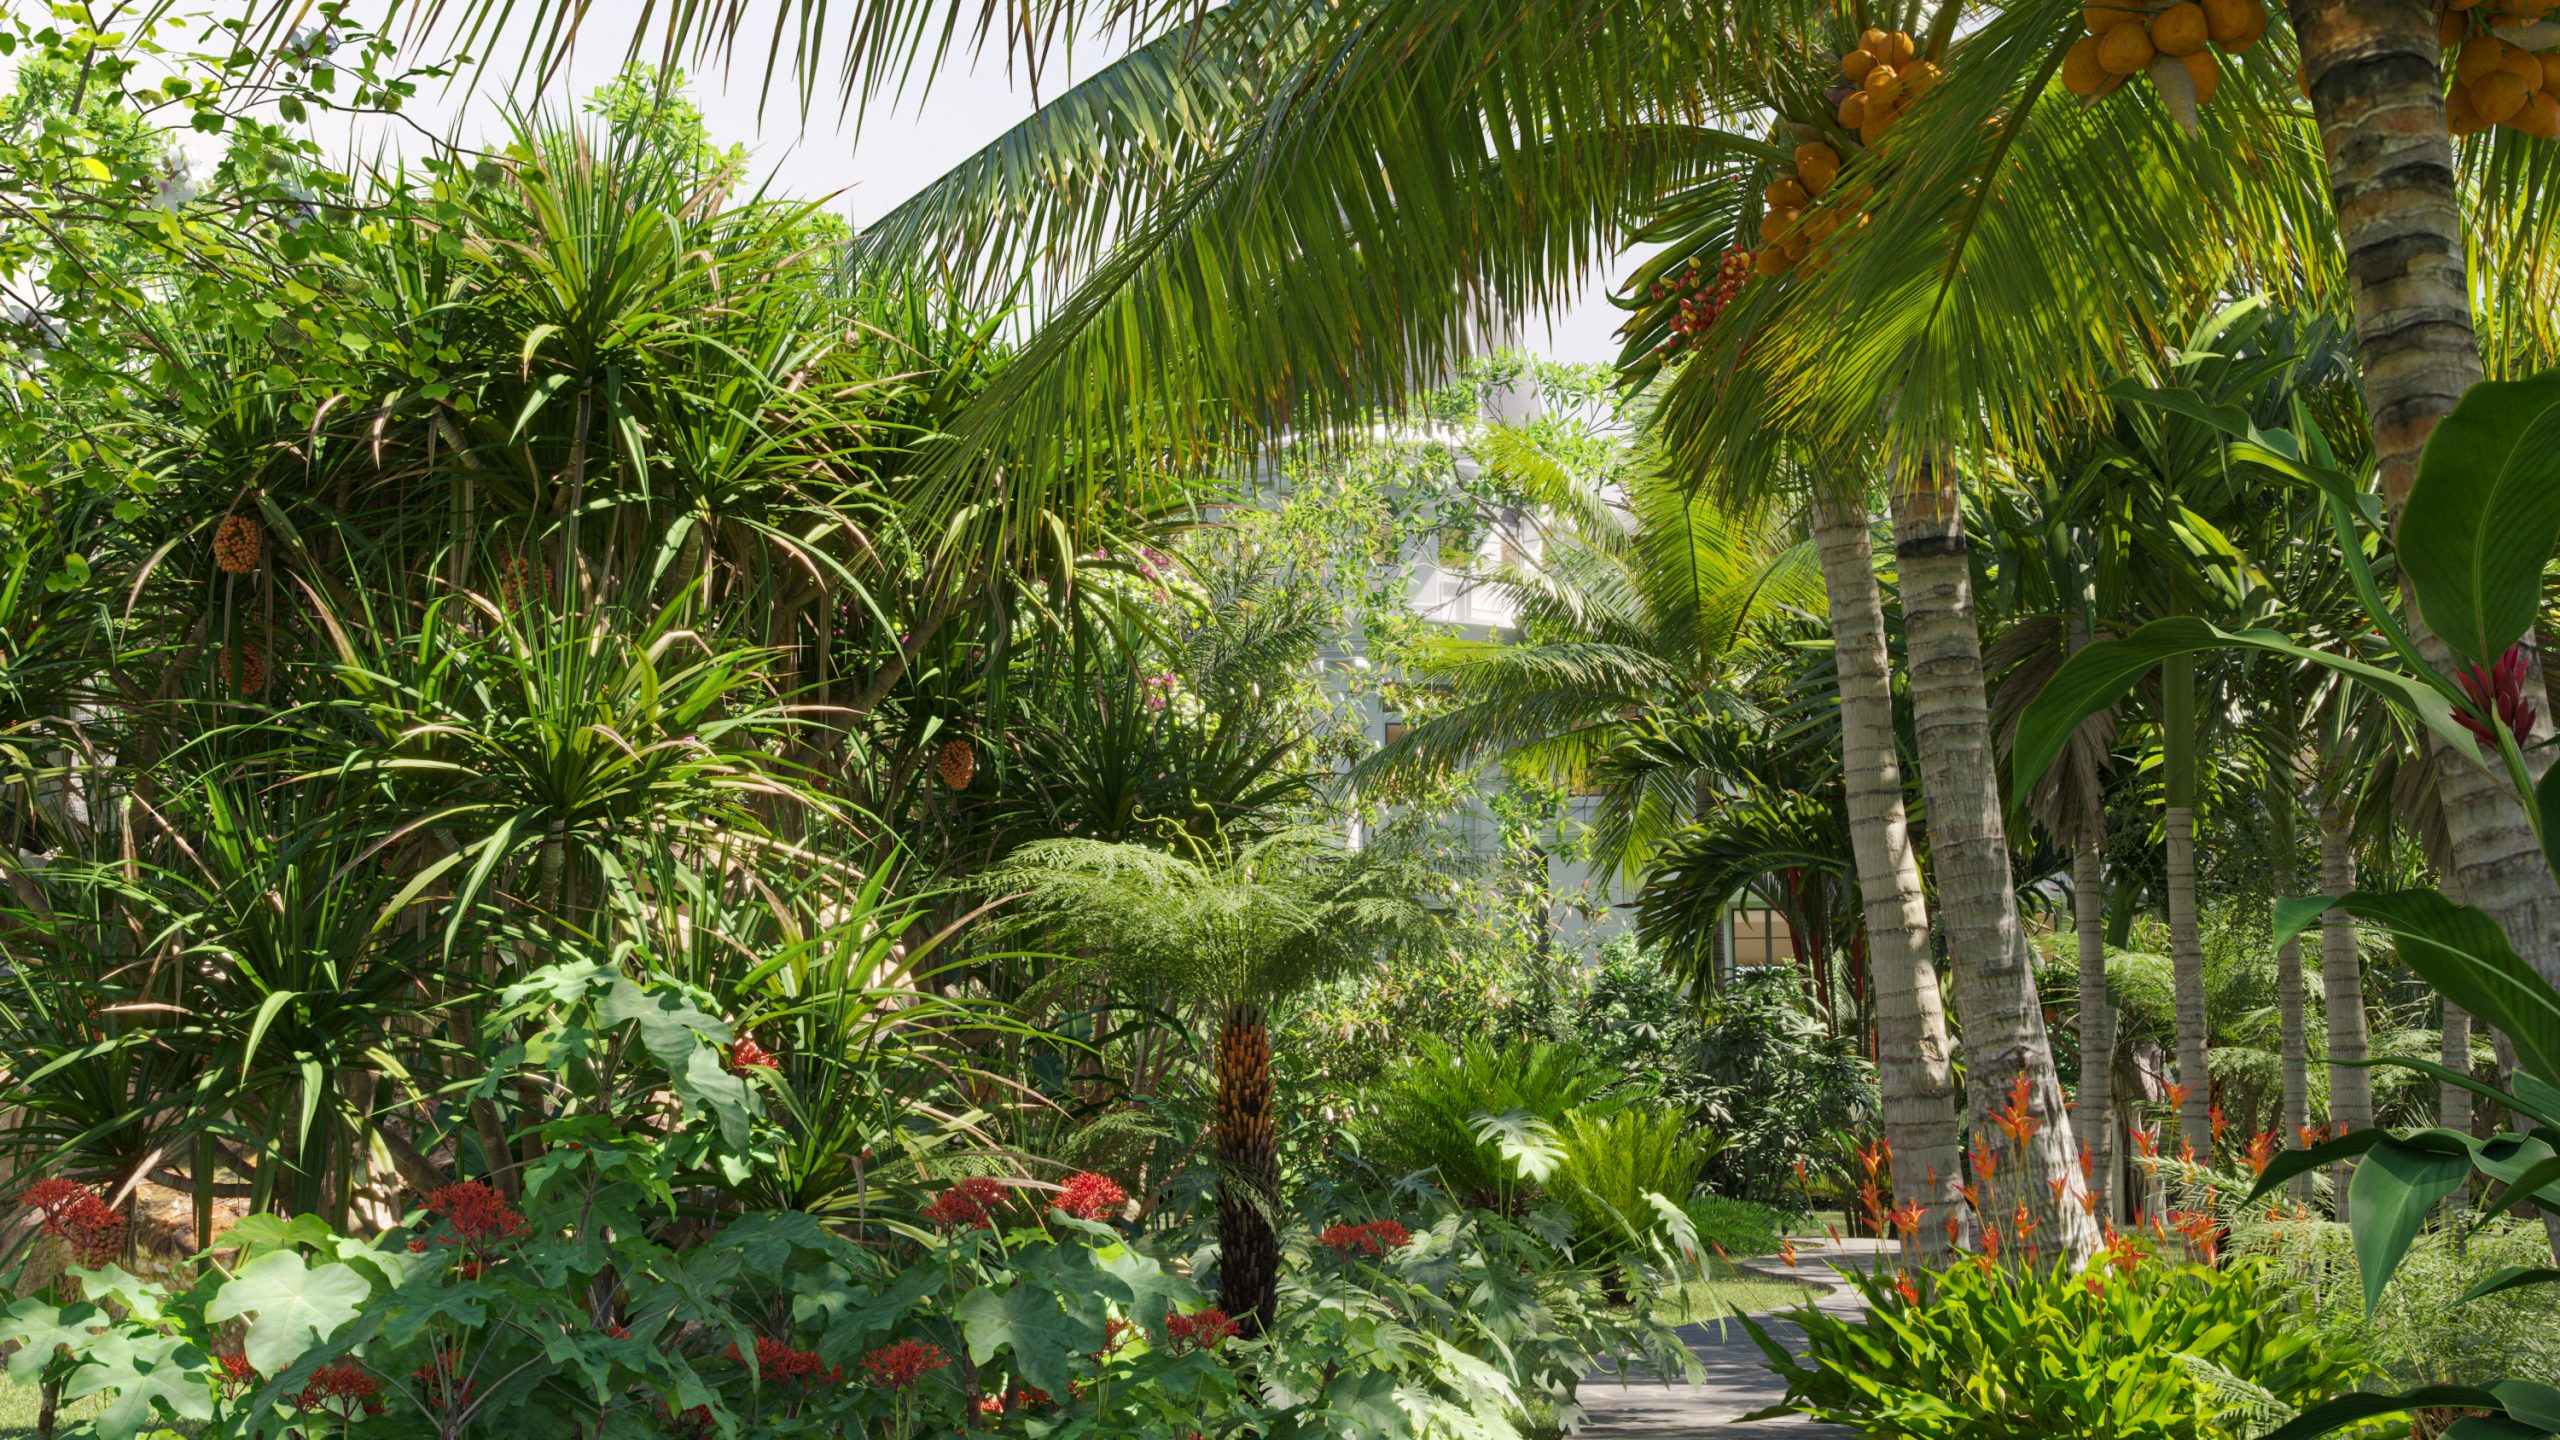 Collection 27 - Tropical garden